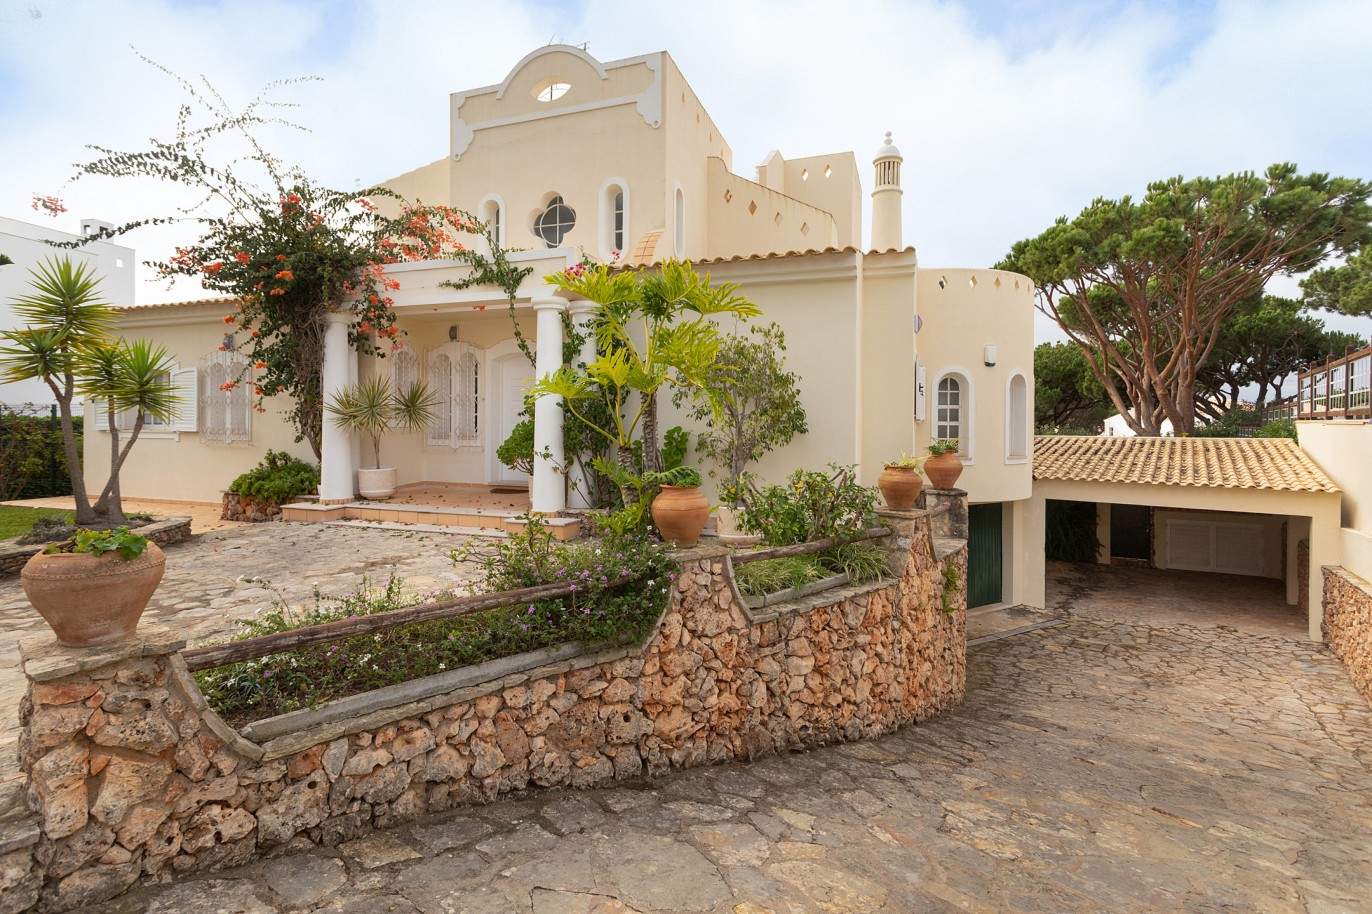 5 Bedroom Villa with swimming pool, for sale in Vilamoura, Algarve_212568